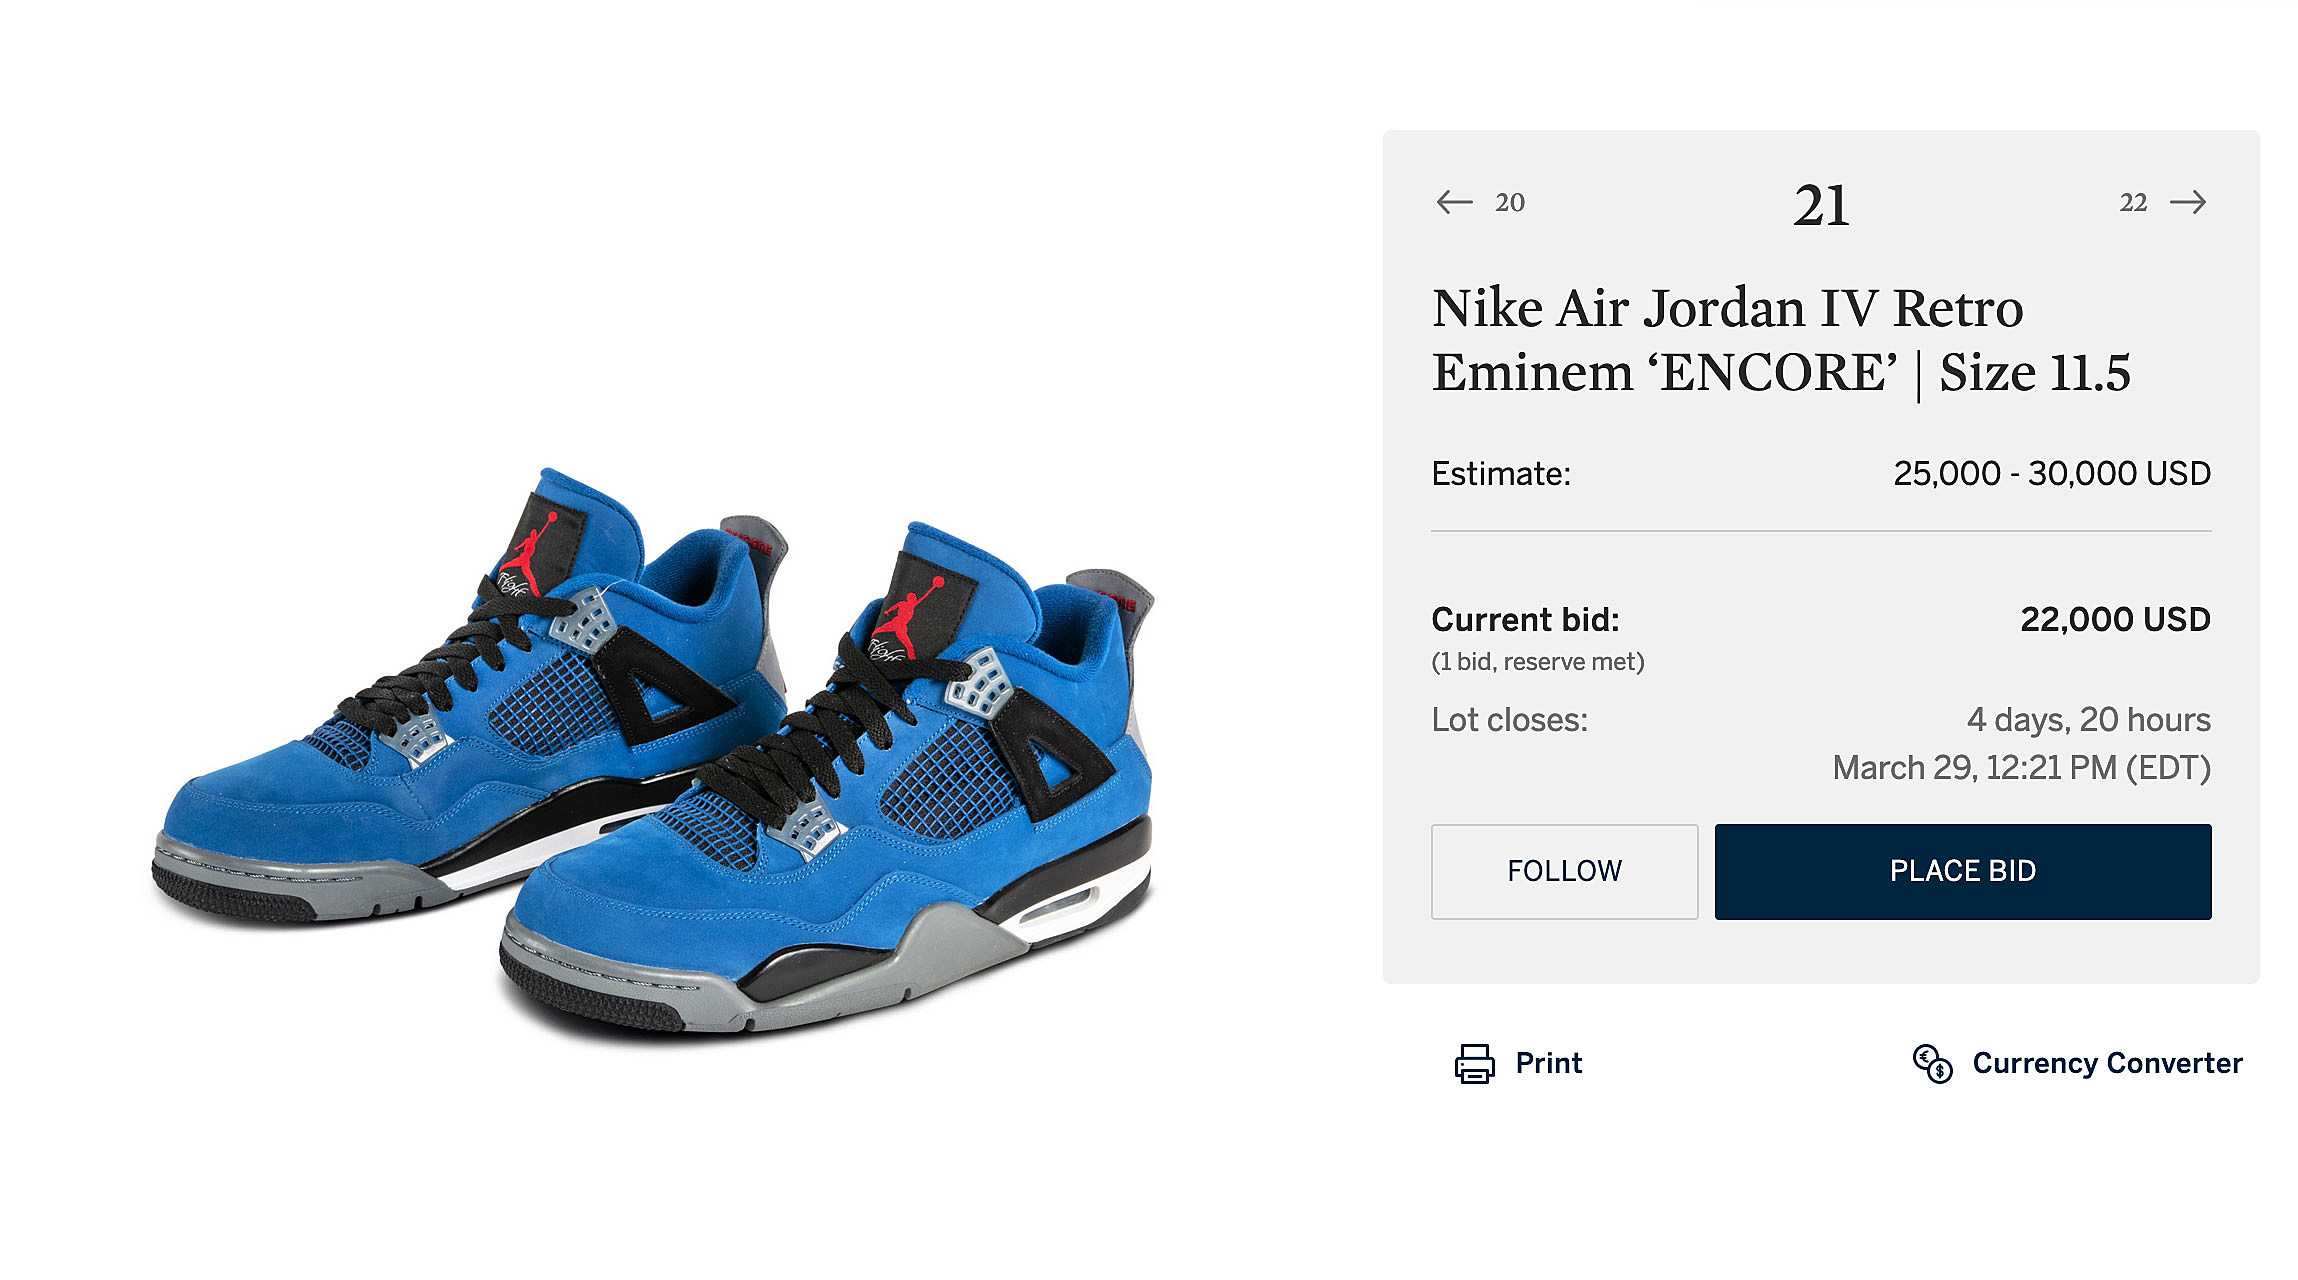 Nike Air Jordan IV Retro Eminem 'ENCORE' StockX Version, Size 11.5, Scarce Air, 2021